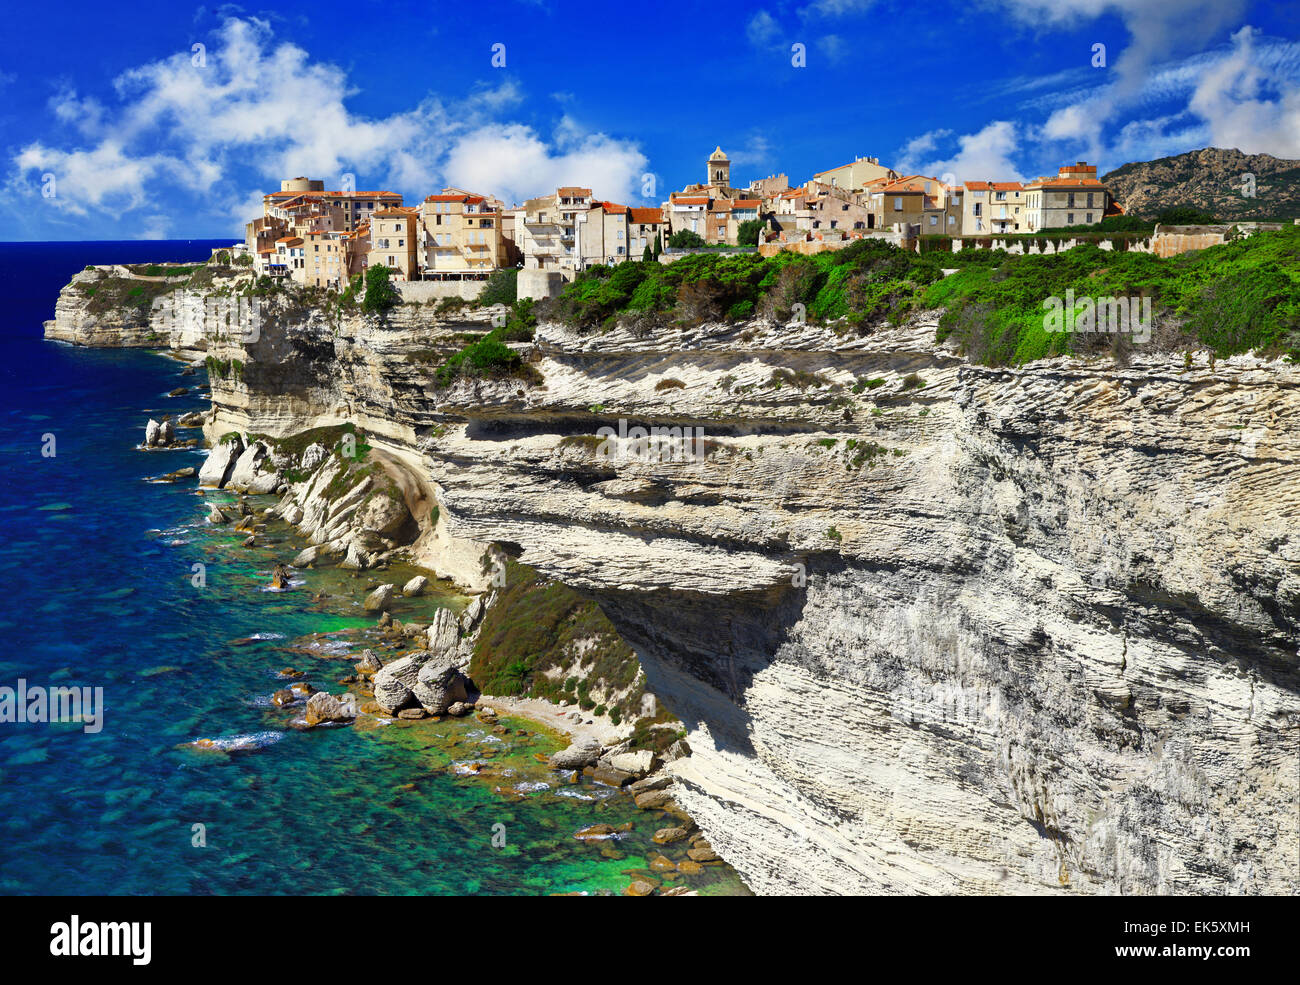 La ville pittoresque de Bonifacio, Corse, France Banque D'Images